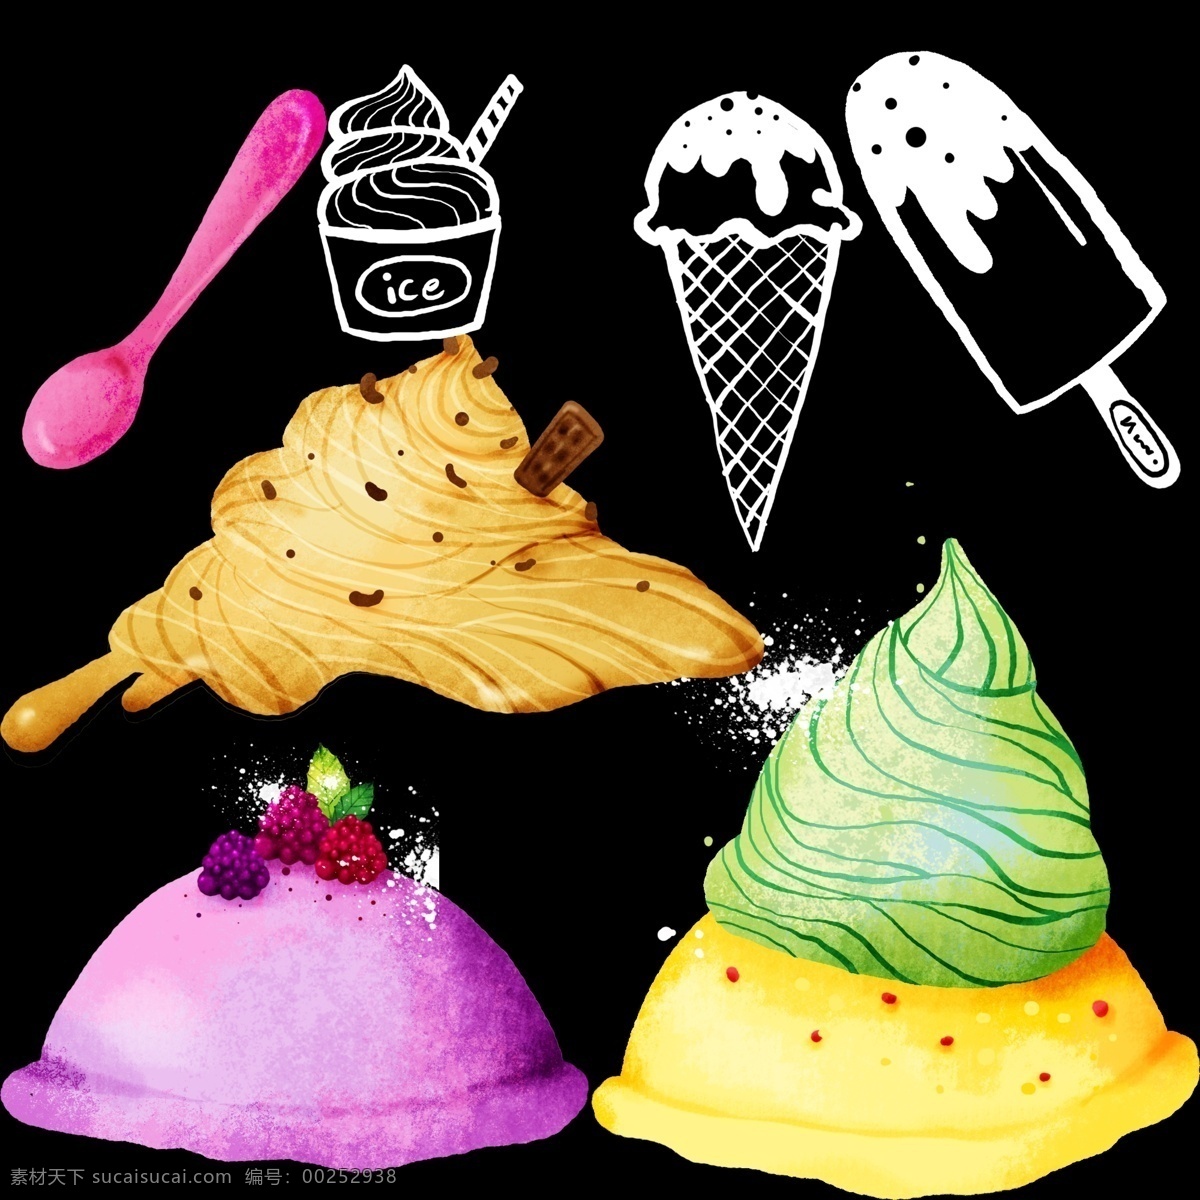 卡通 冰淇淋 草莓冰淇淋 樱桃冰淇淋 巧克力冰淇淋 哈密瓜冰淇淋 香橙冰淇淋 脆皮雪糕 冰棍 牛奶雪糕 冰淇淋素材 奶油 水果 夏日美食 夏季 冰淇淋球 夏季冷饮 冷饮 甜点 彩色冰淇淋 冰淇淋杯 水果冰淇淋 雪糕 水果雪糕 脆皮冰淇淋 牛奶冰淇淋 巧克力 卡通冰淇淋 卡通绵绵冰 卡通雪糕 卡通素材 勺子 卡通设计 黑色